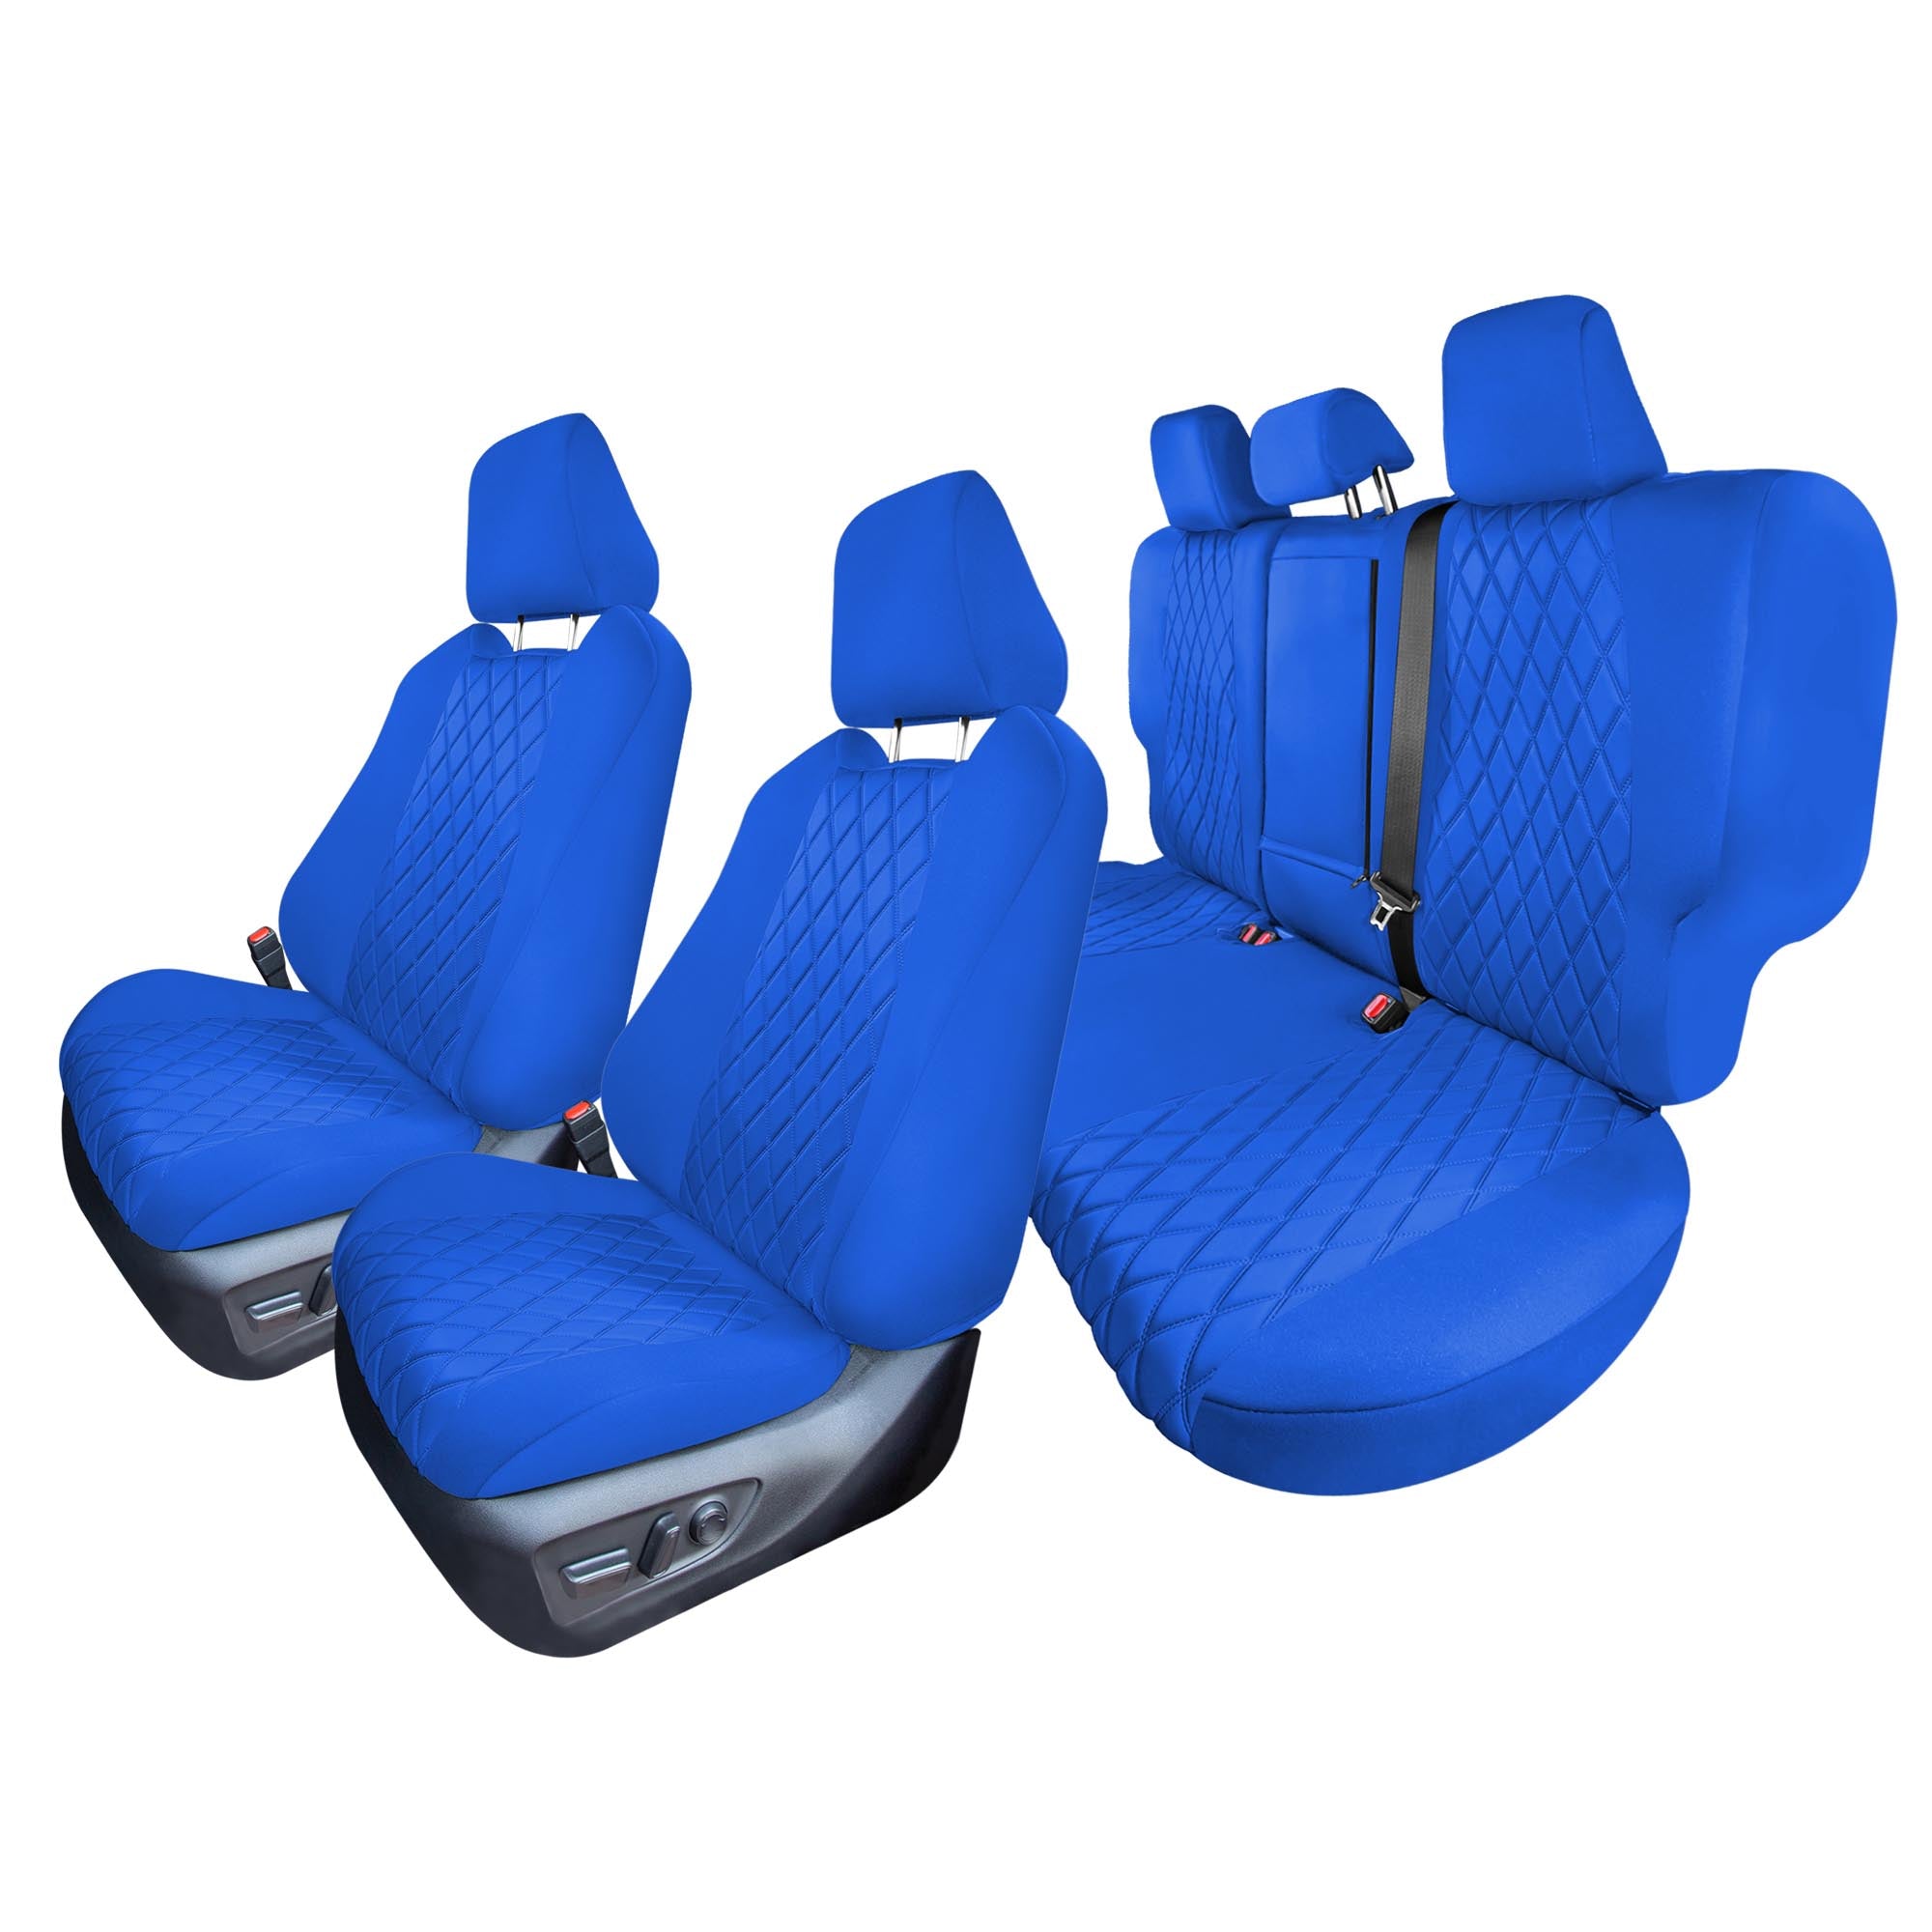 Toyota Rav4 Hybrid | Hybrid Prime 2021-2024  - Full Set Seat Covers - Solid Blue Ultraflex Neoprene